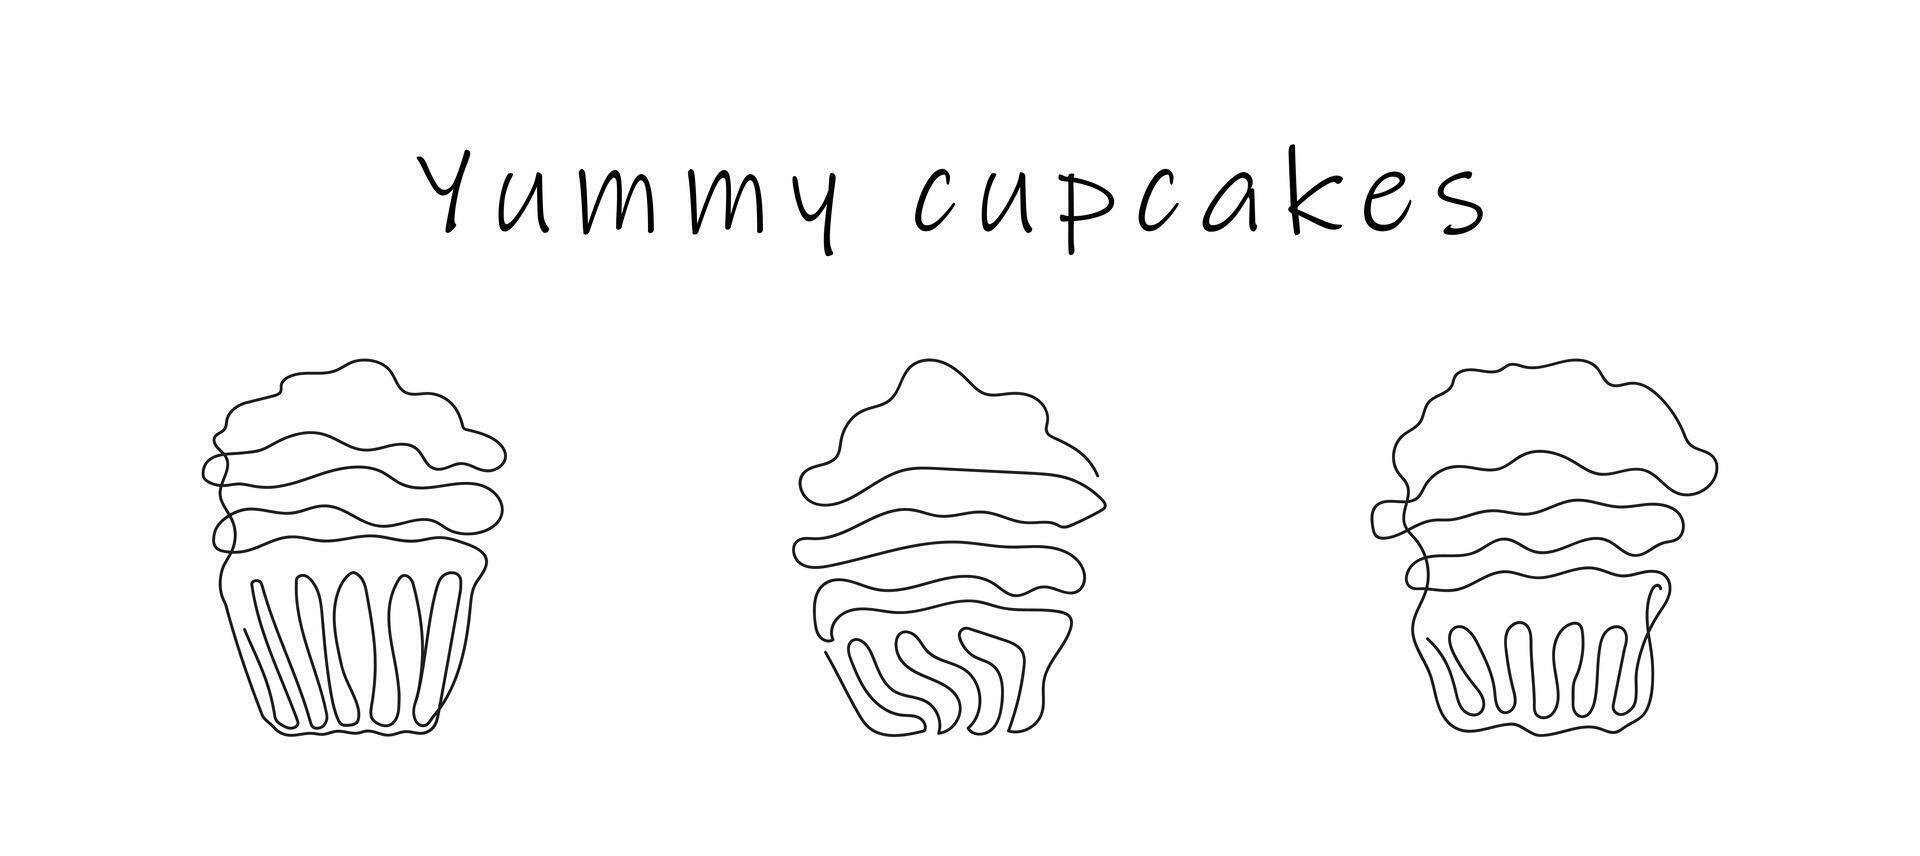 reeks van cupcakes in stijl van doorlopend een lijn tekening met tekst lekker cupcakes. gemakkelijk lijn kunst van muffins met golvend glazuur. zwart en wit vector. ontwerp elementen voor groet, ansichtkaart, afdrukken vector